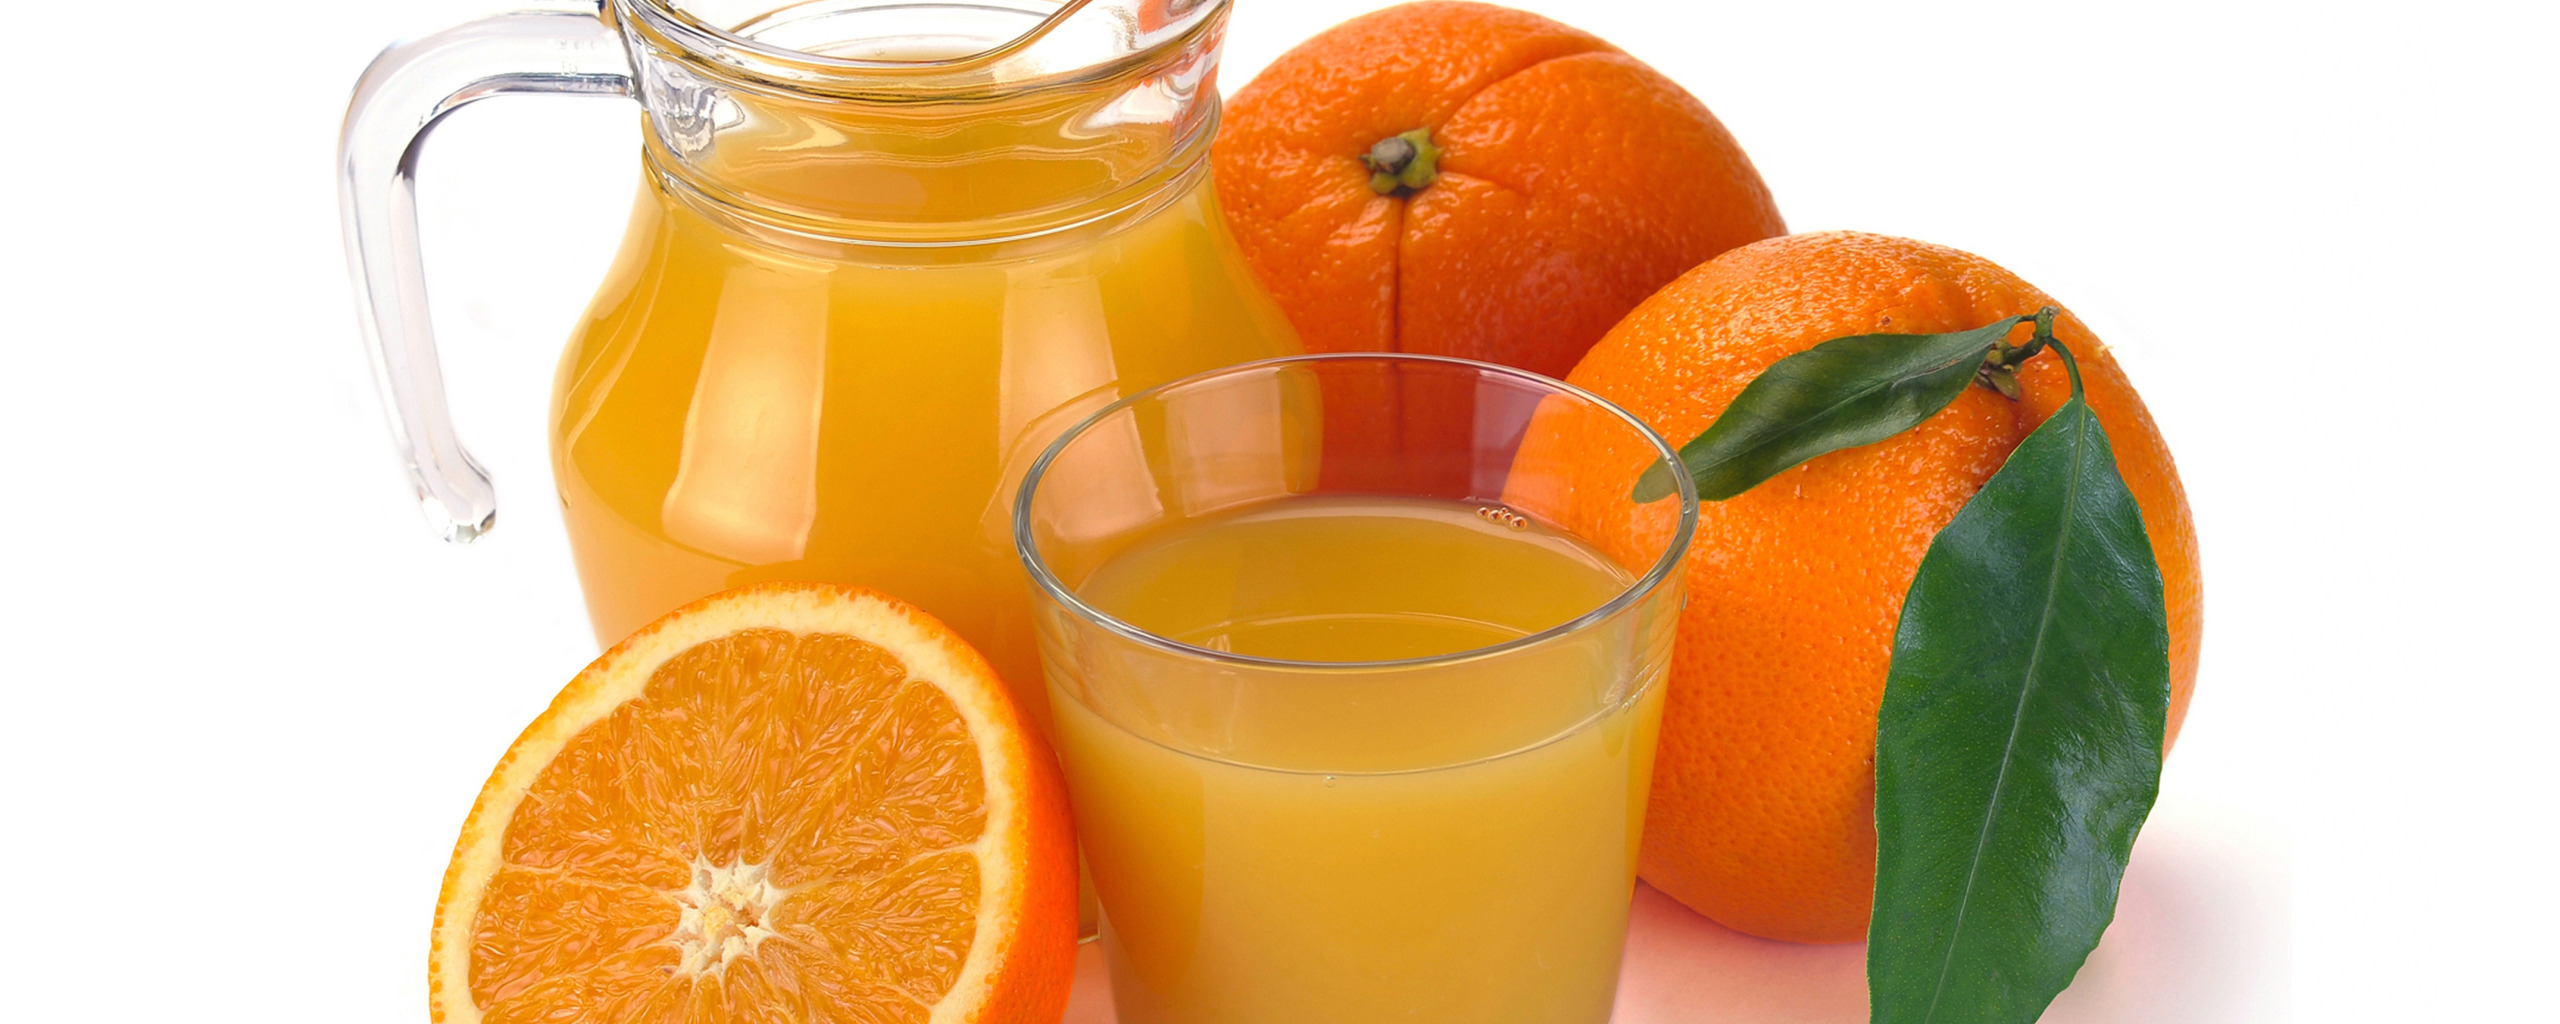 Сок. Апельсиновый сок. Апельсиновый сок без фона. Стакан апельсинового сока. Виноградно апельсиновый сок